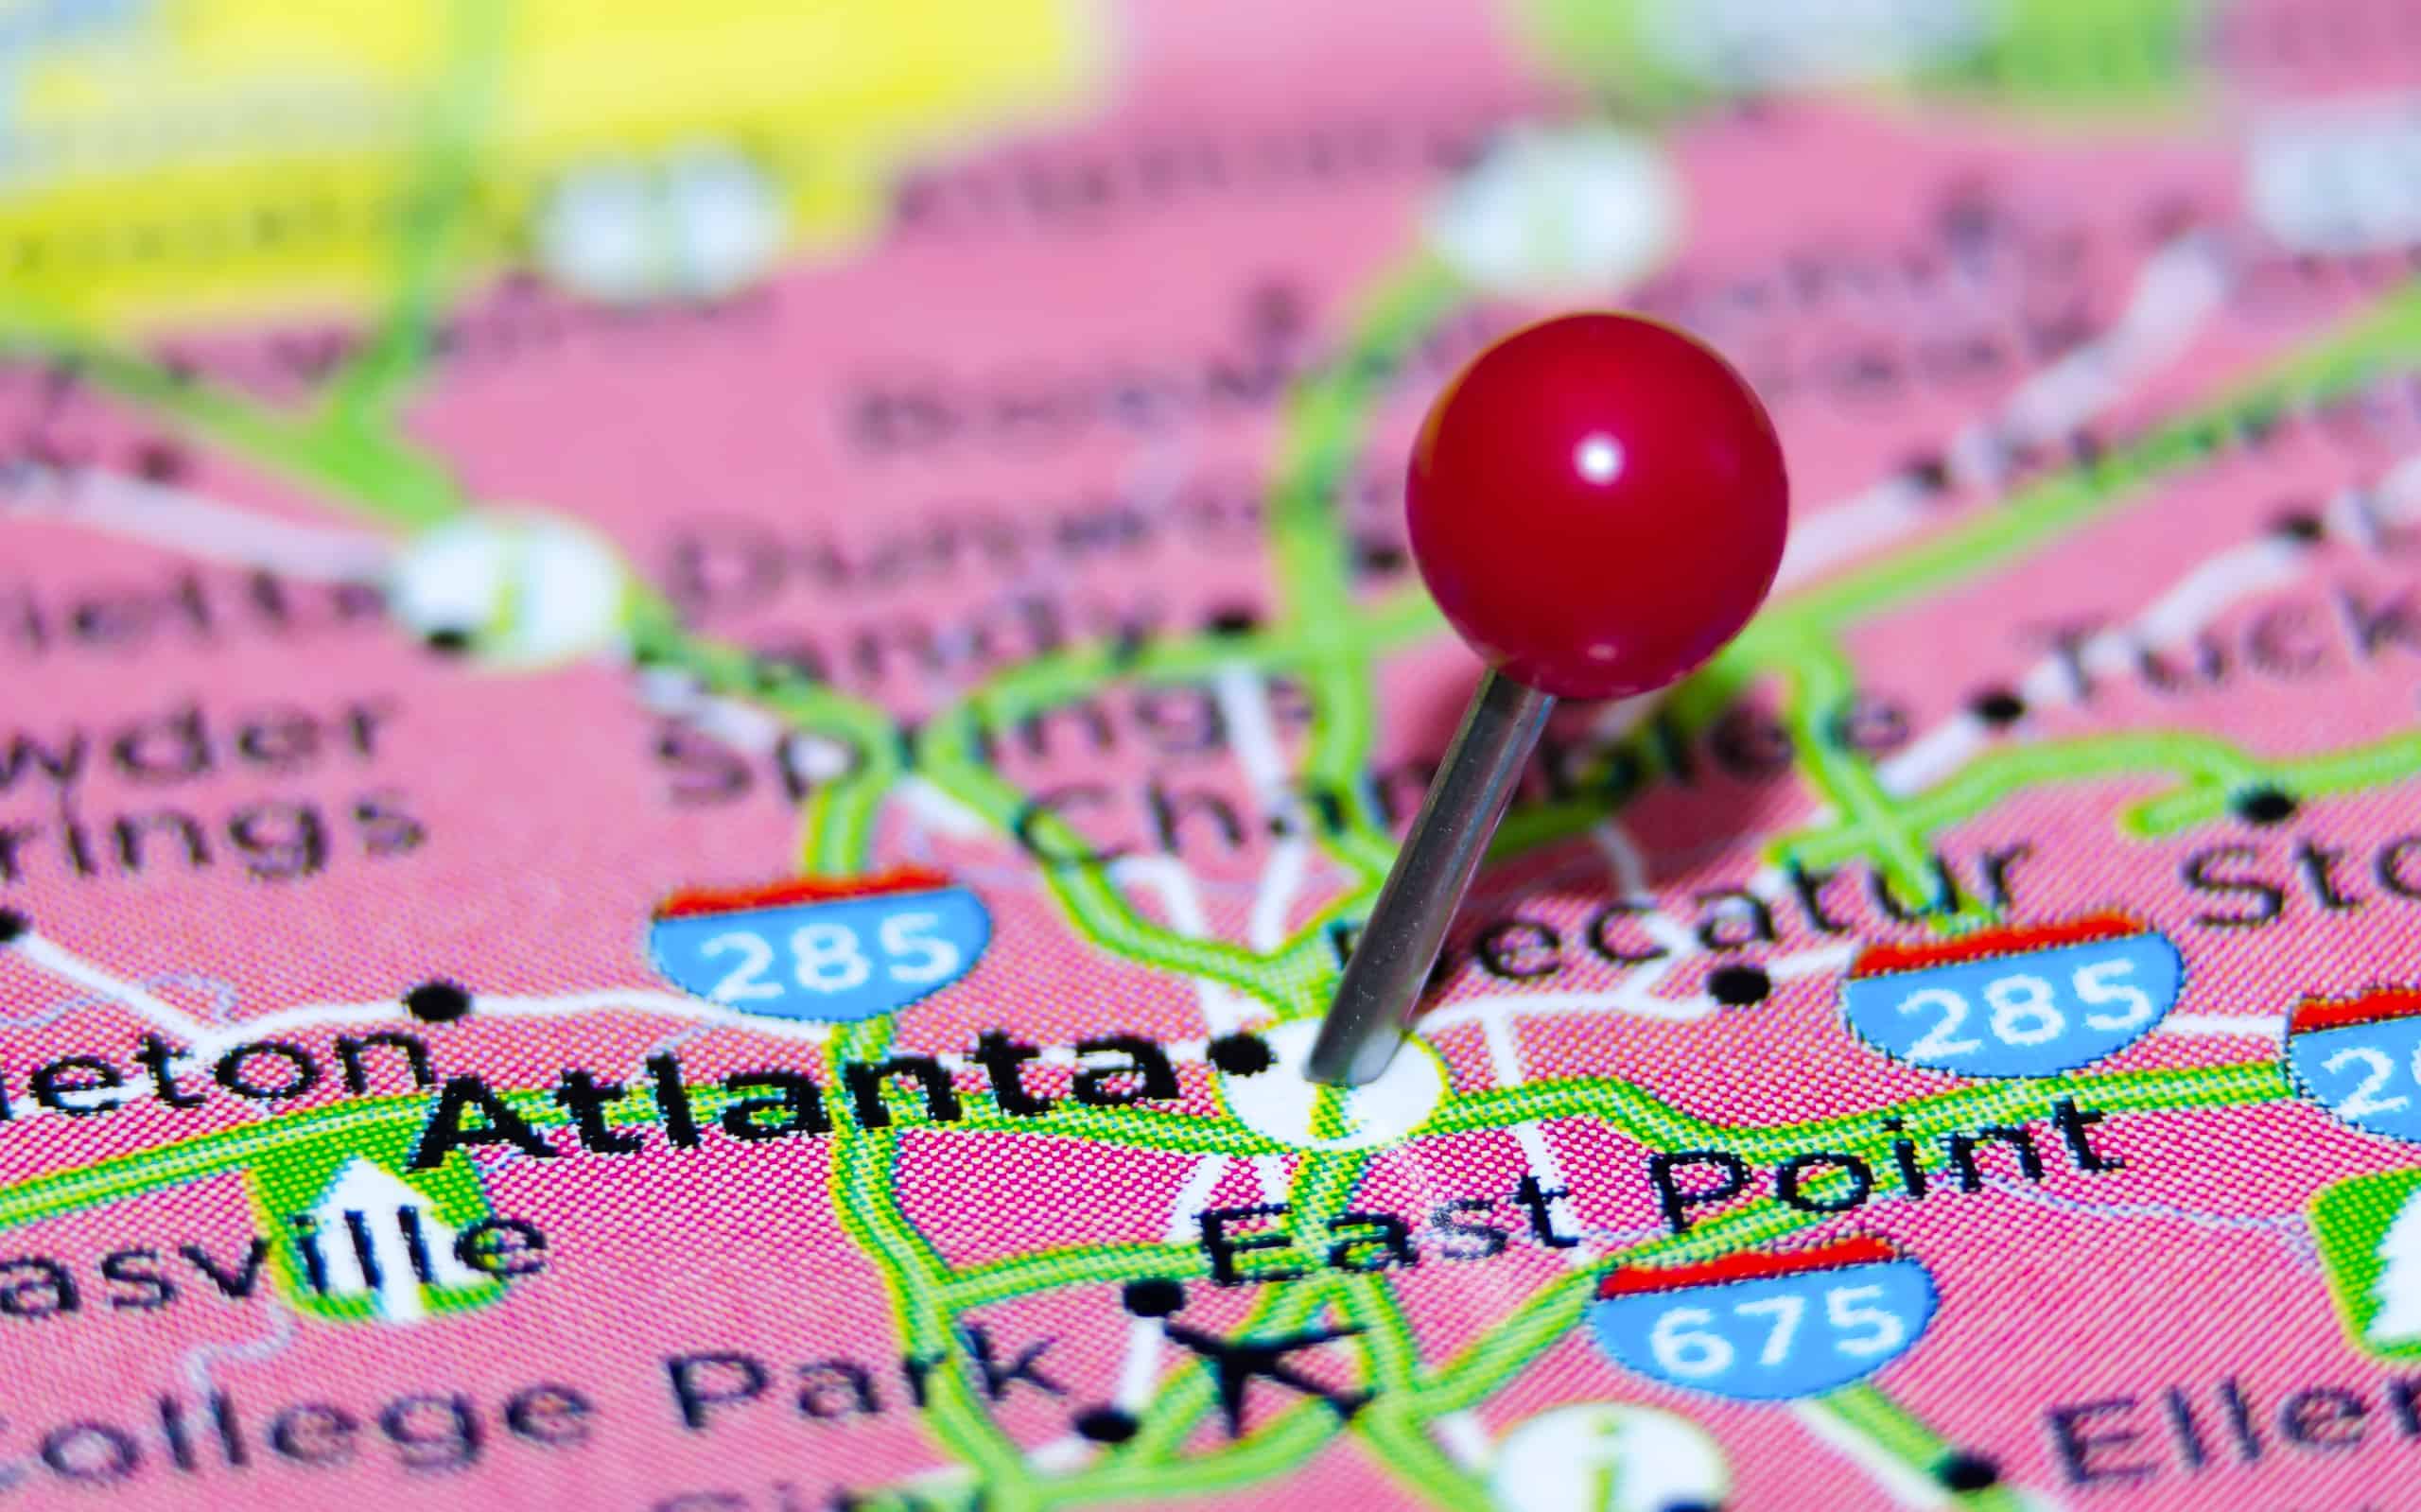  Per cosa è conosciuta Atlanta?  10 cose che gli abitanti di Atlanta amano di se stessi
